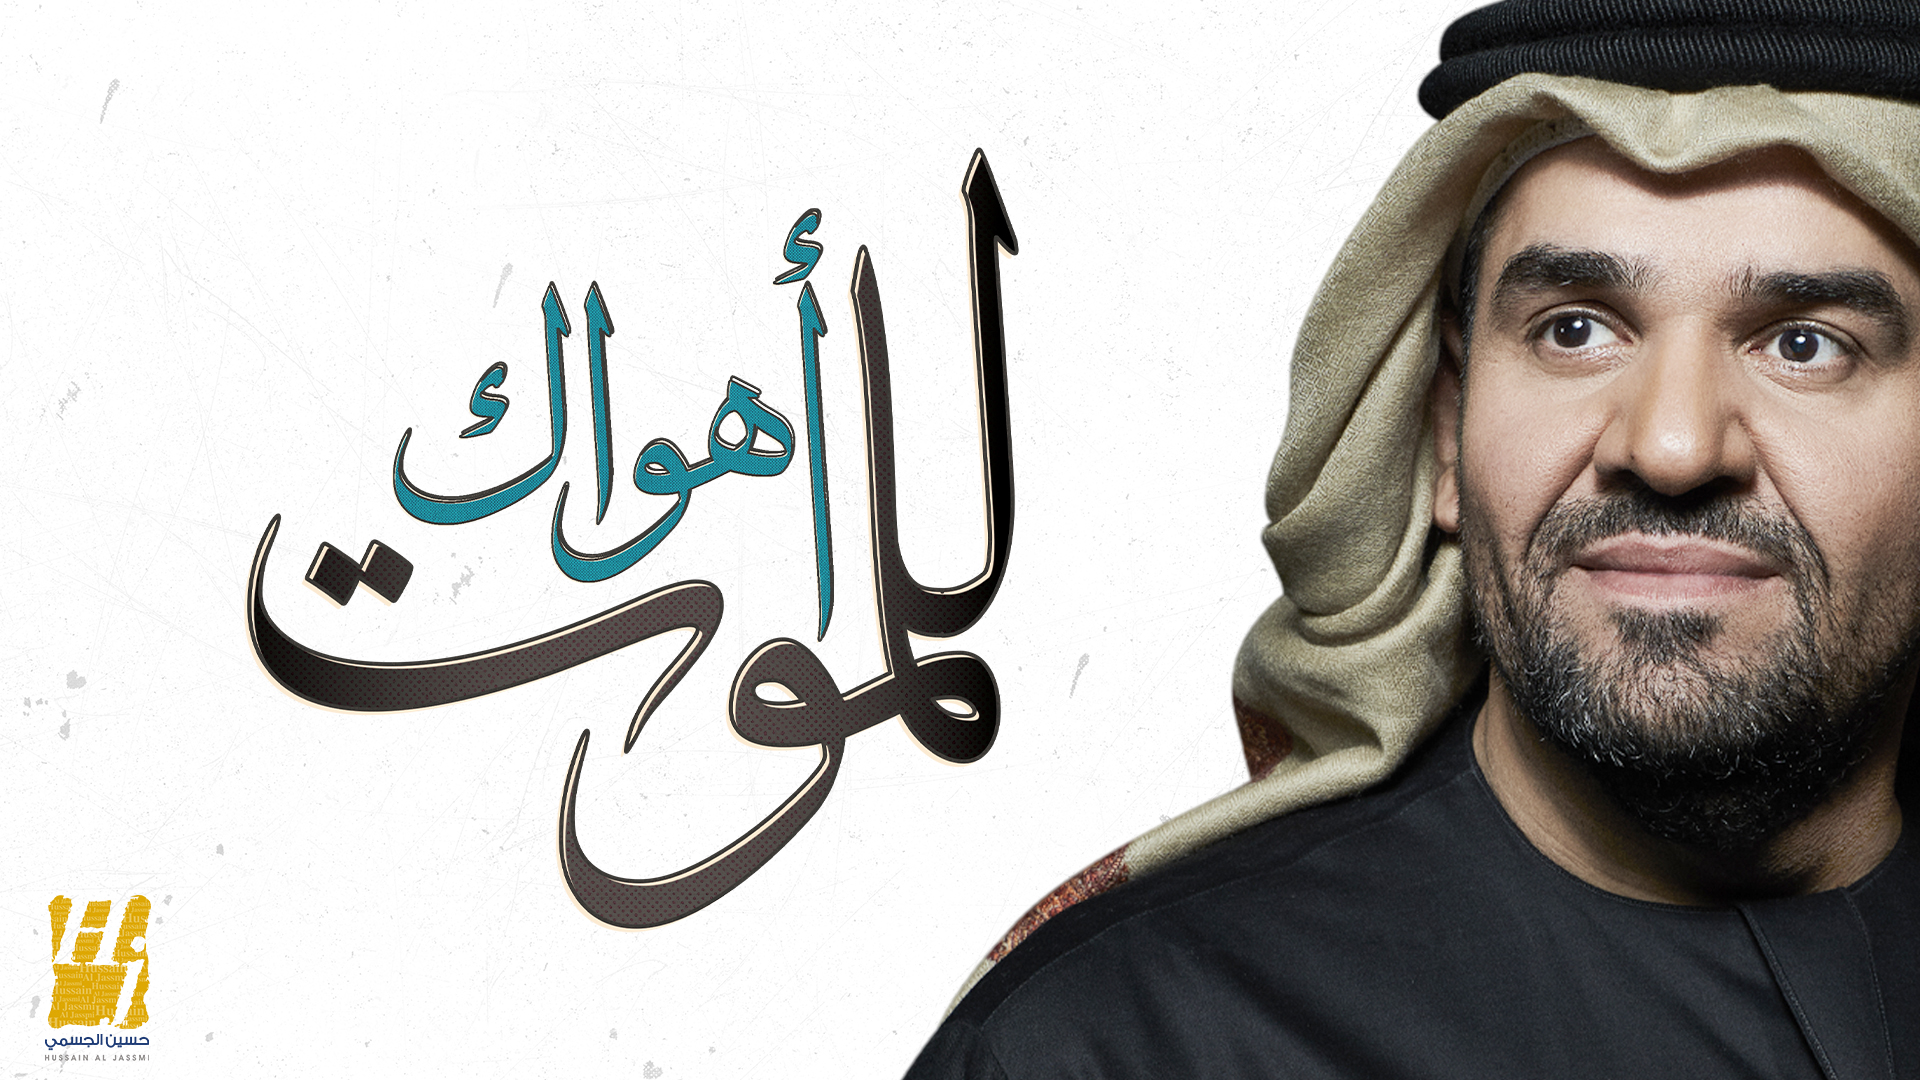 ‫حسين الجسمي يعايد محبيه بـأهواك للموت‬